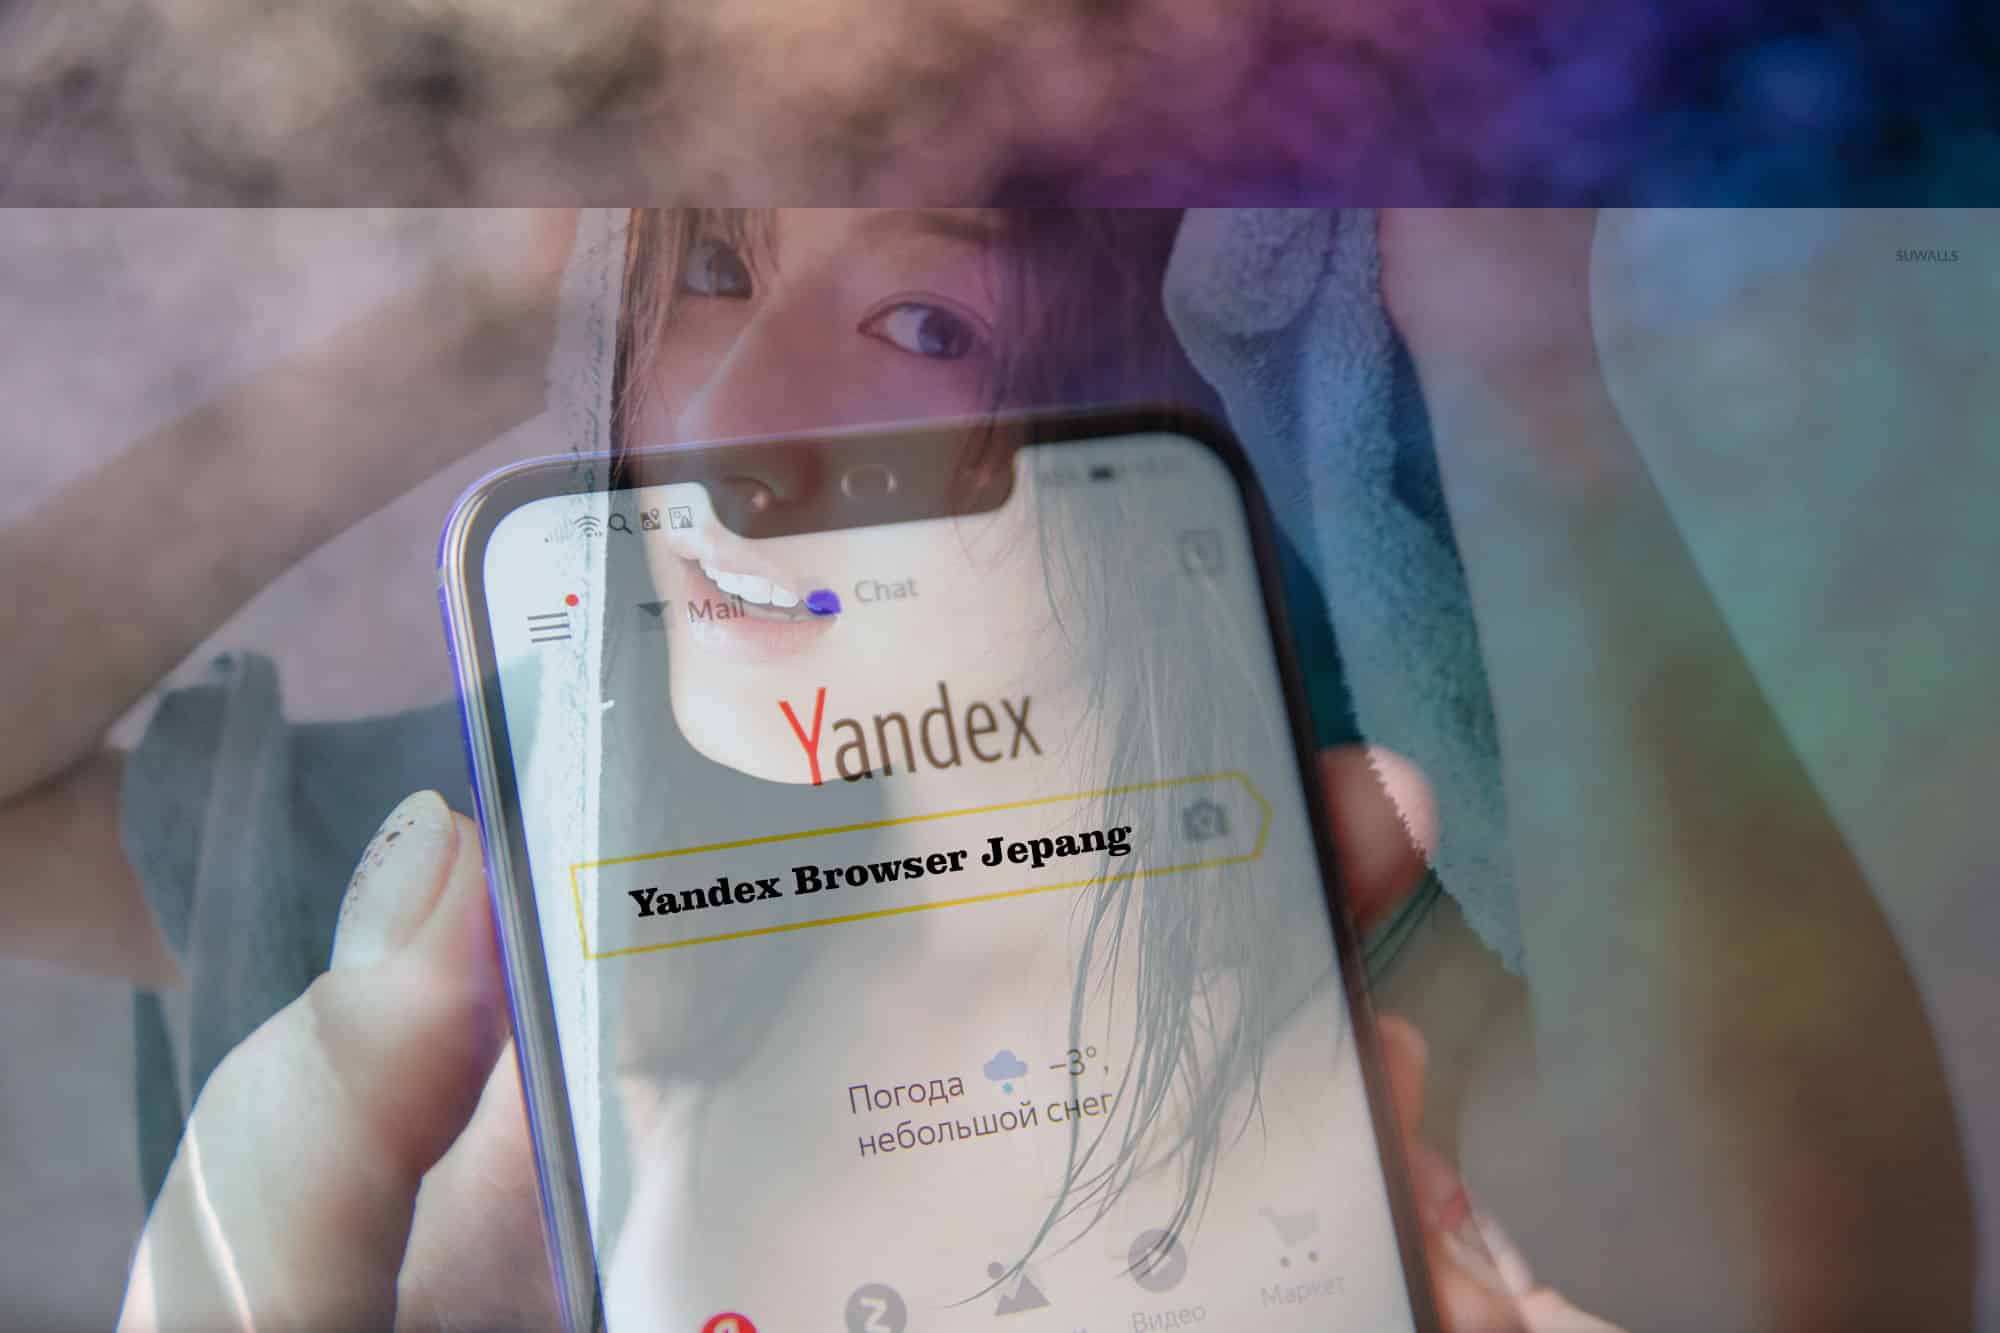 Download Yandex Browser Jepang Apk